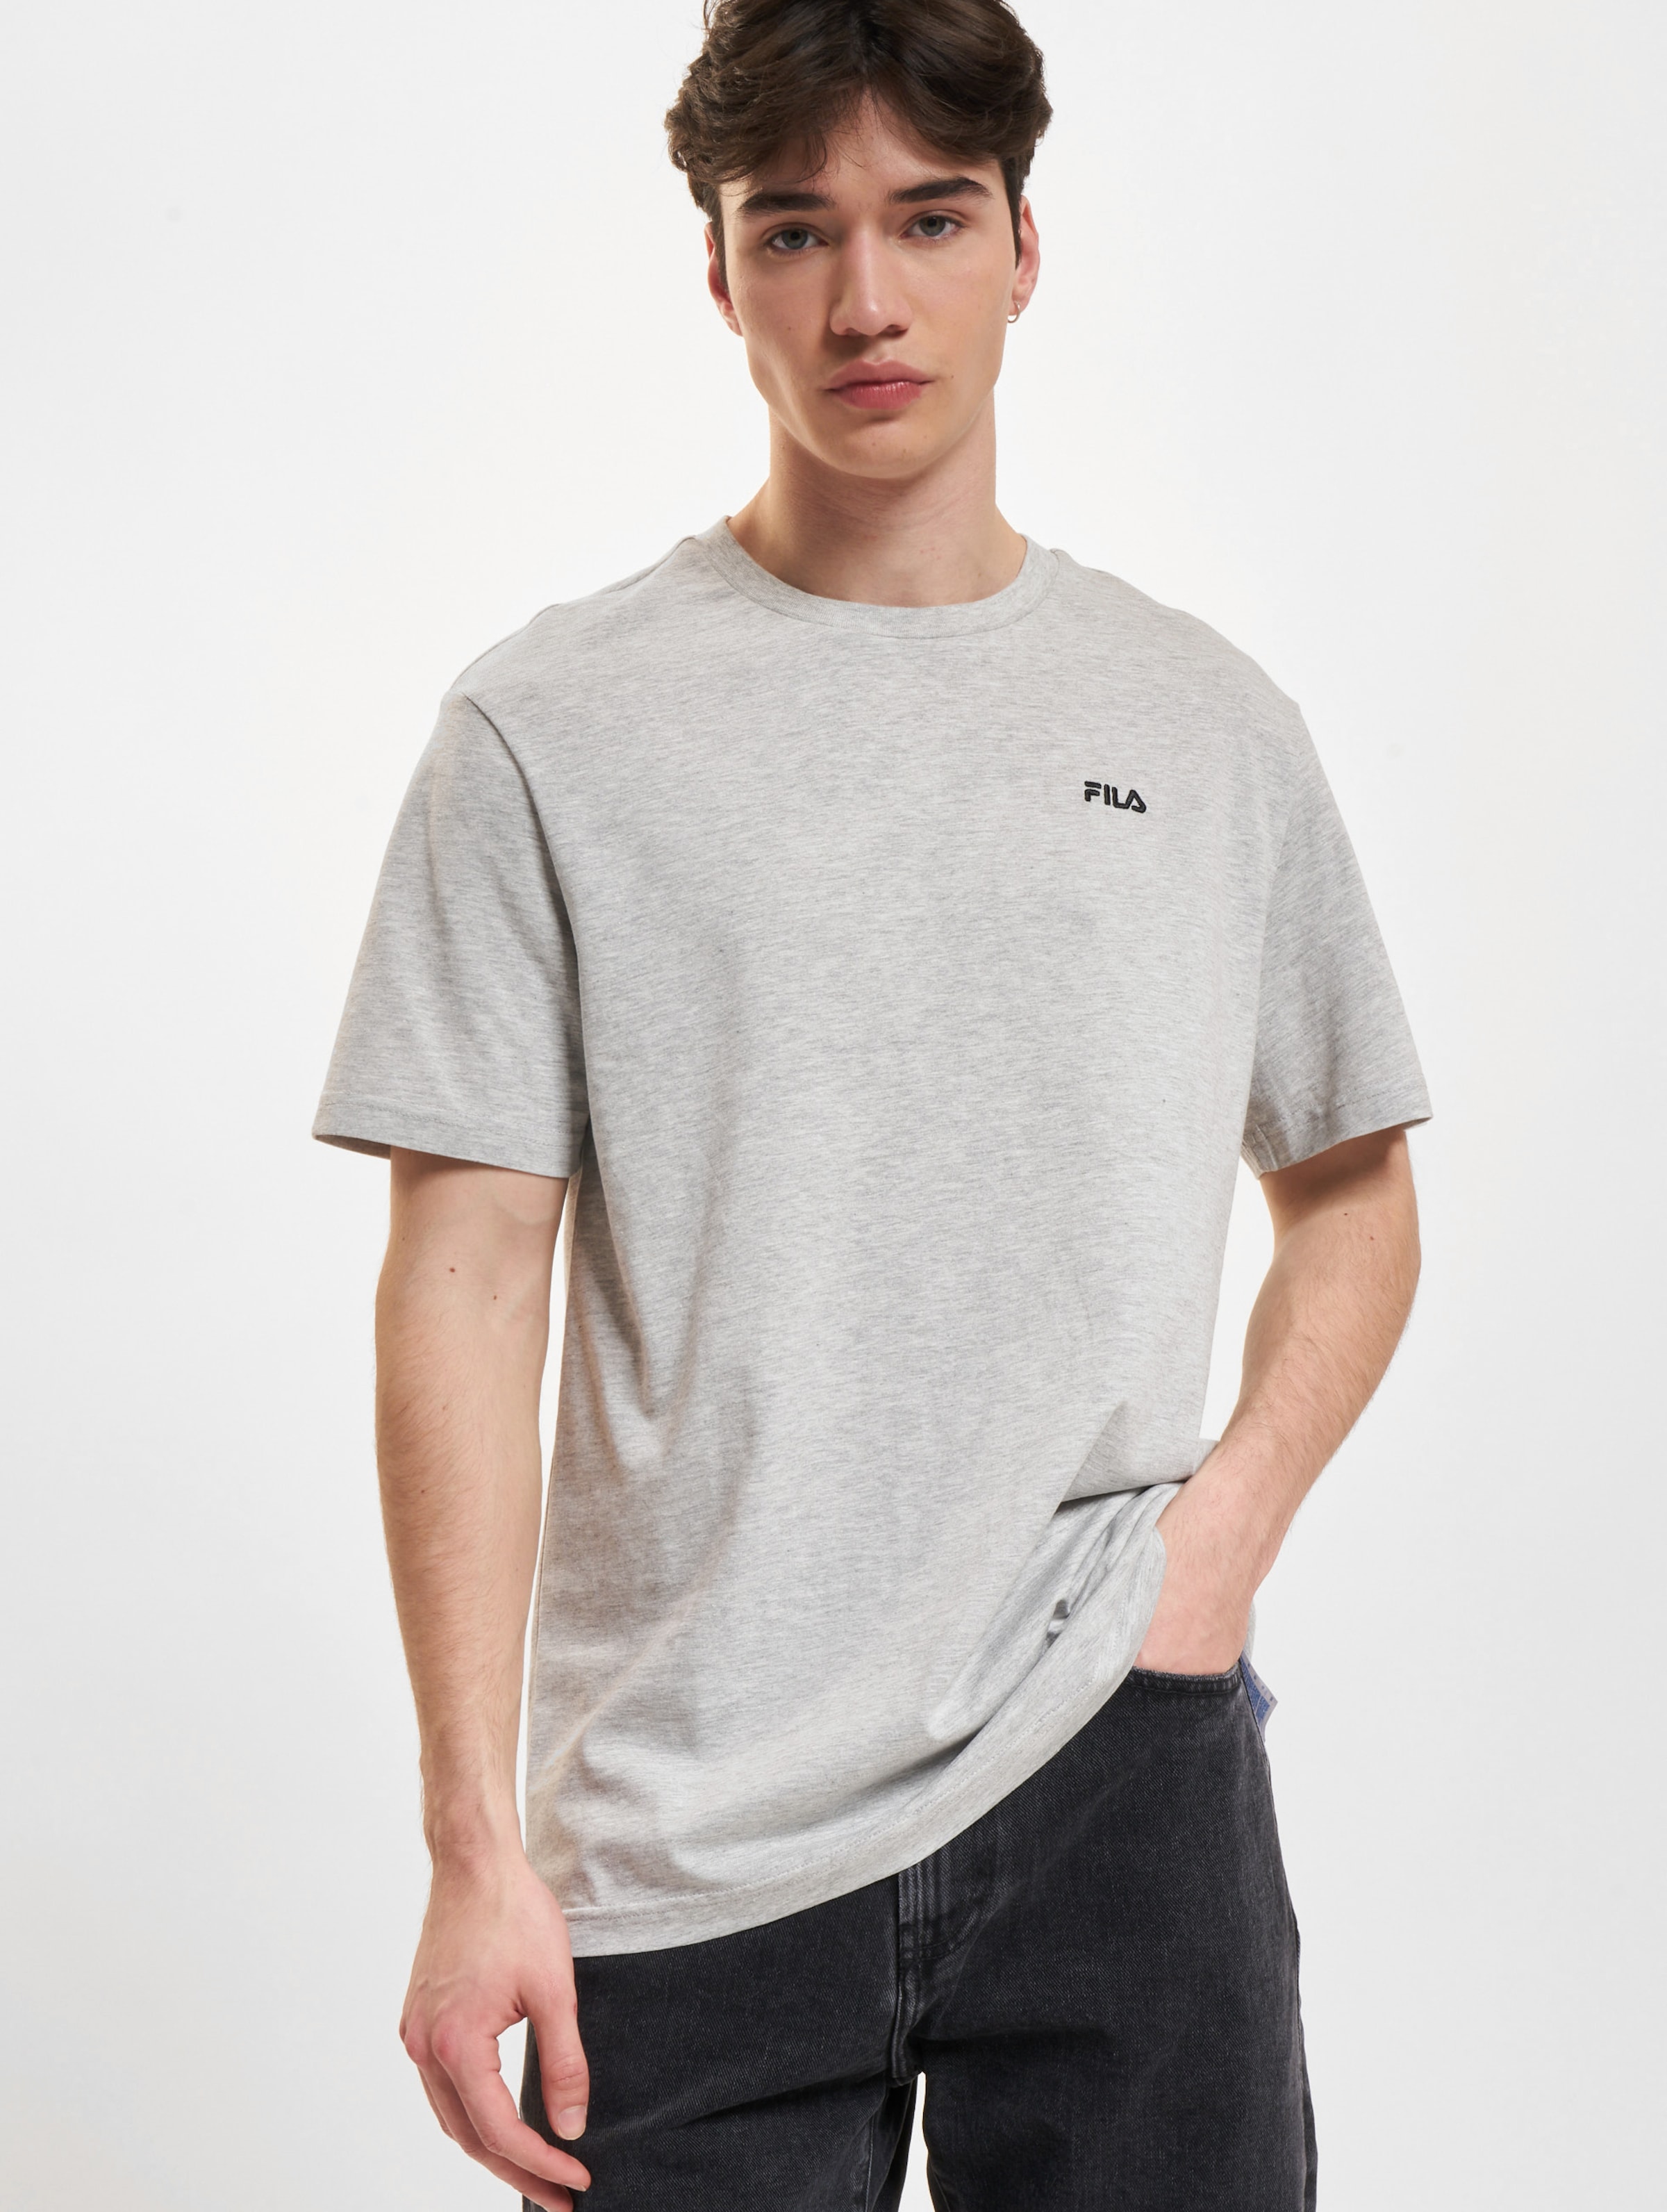 FILA Fila Berloz T-Shirt Mannen op kleur grijs, Maat M